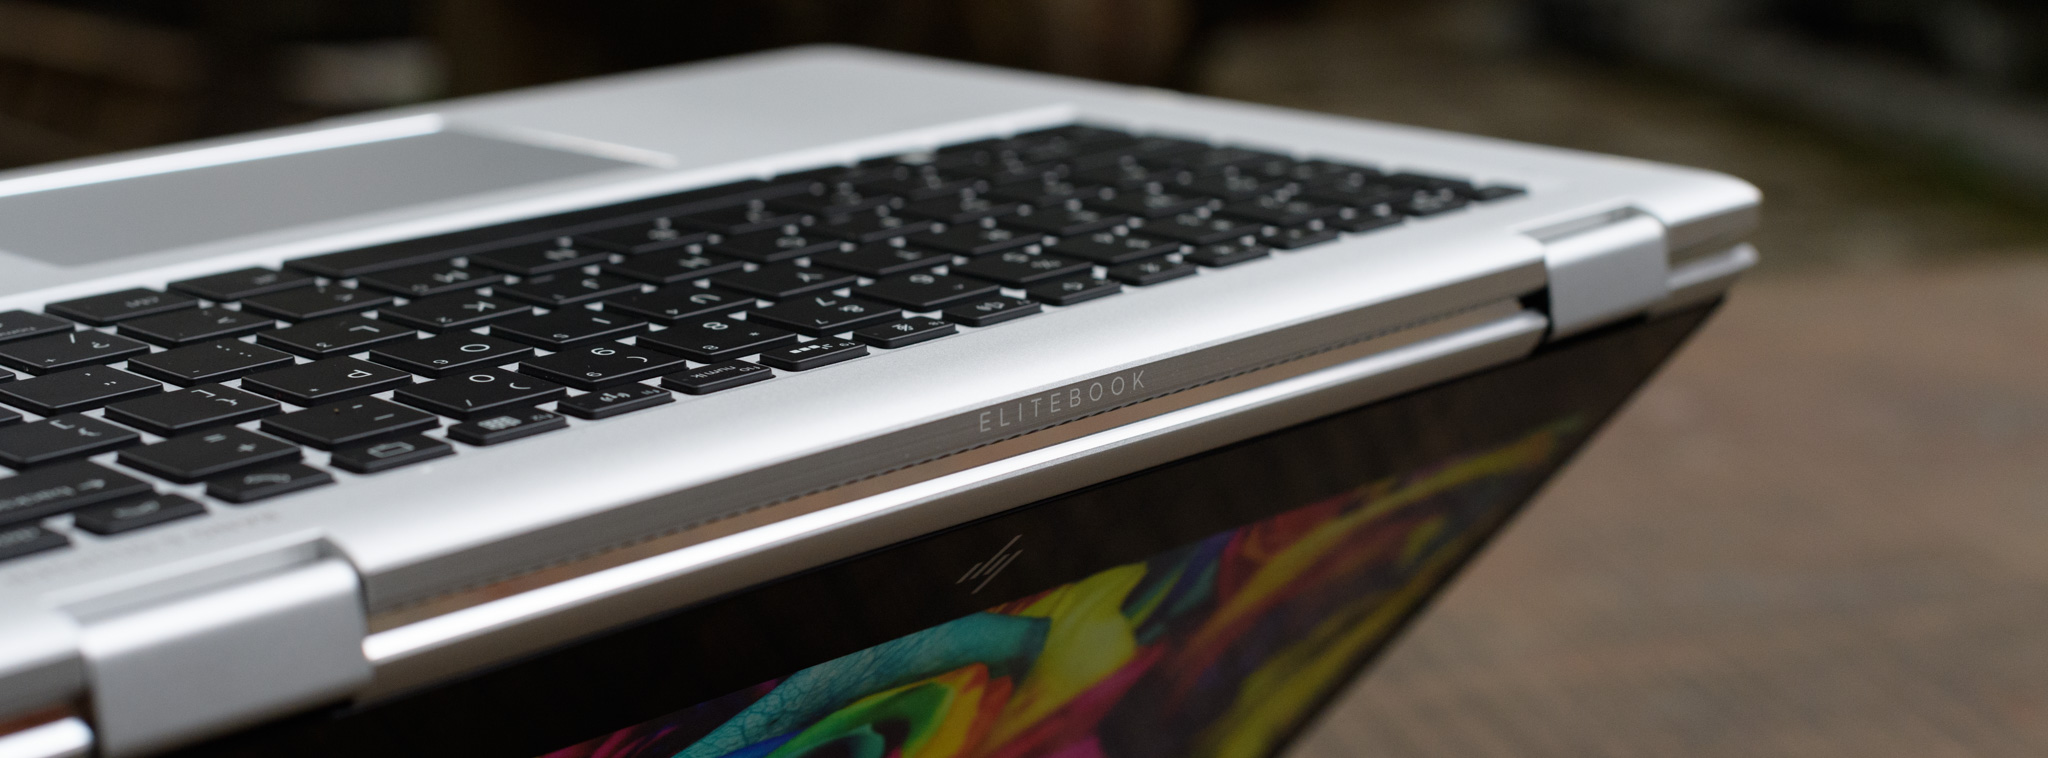 Đánh giá HP EliteBook x360 – Màn hình xoay 360 độ, chú trọng bảo mật, giá 41,9 triệu đồng [HOT]